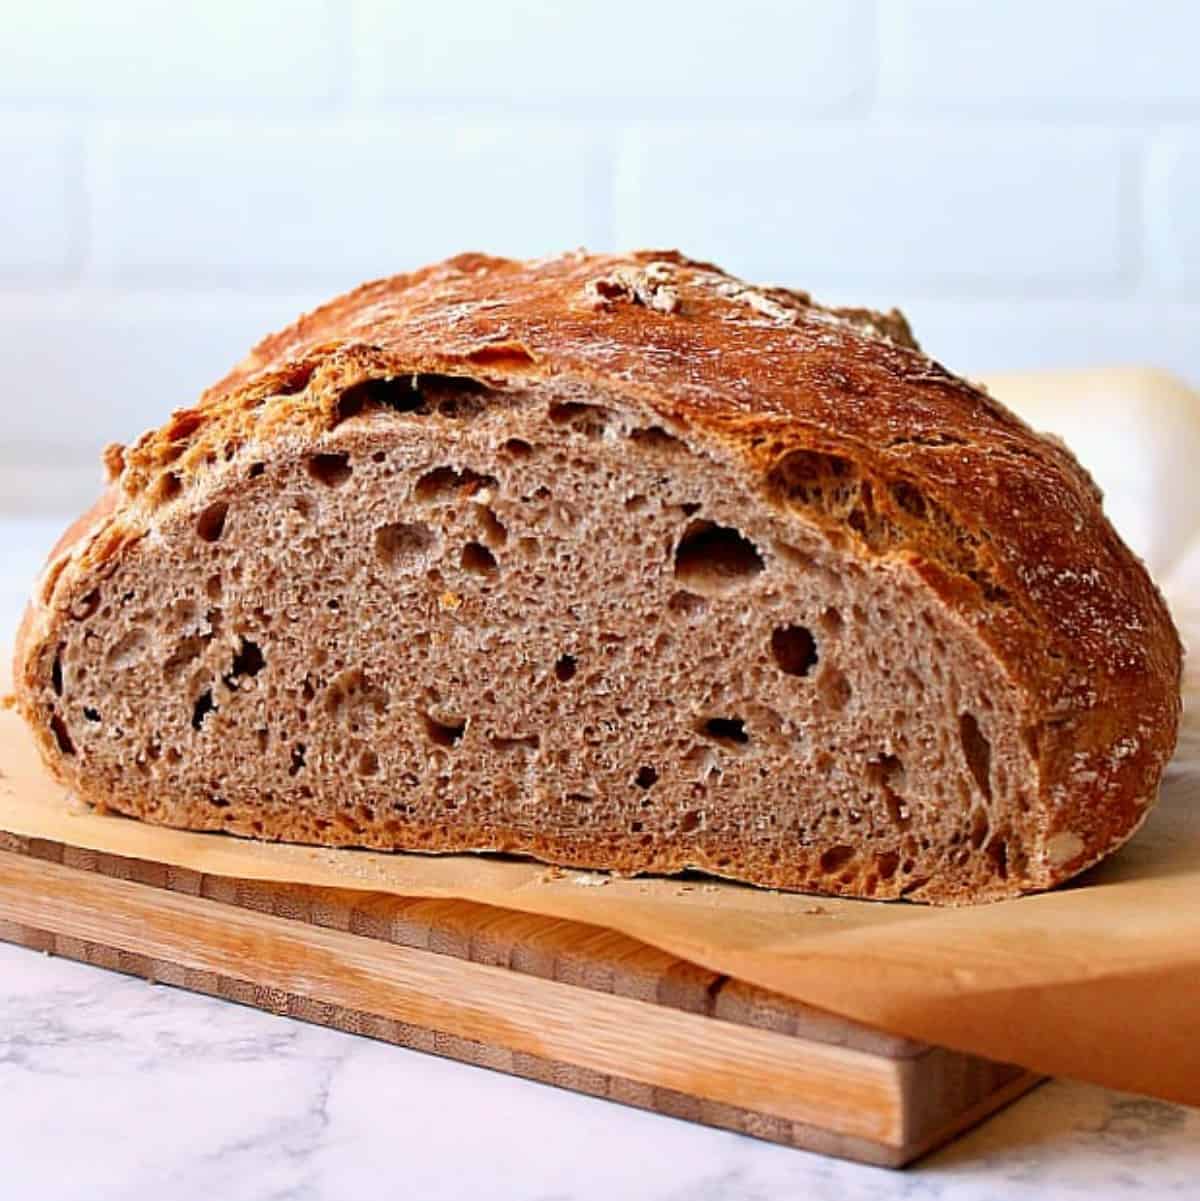 https://www.crunchycreamysweet.com/wp-content/uploads/2018/03/whole-wheat-no-knead-bread-feat.jpg